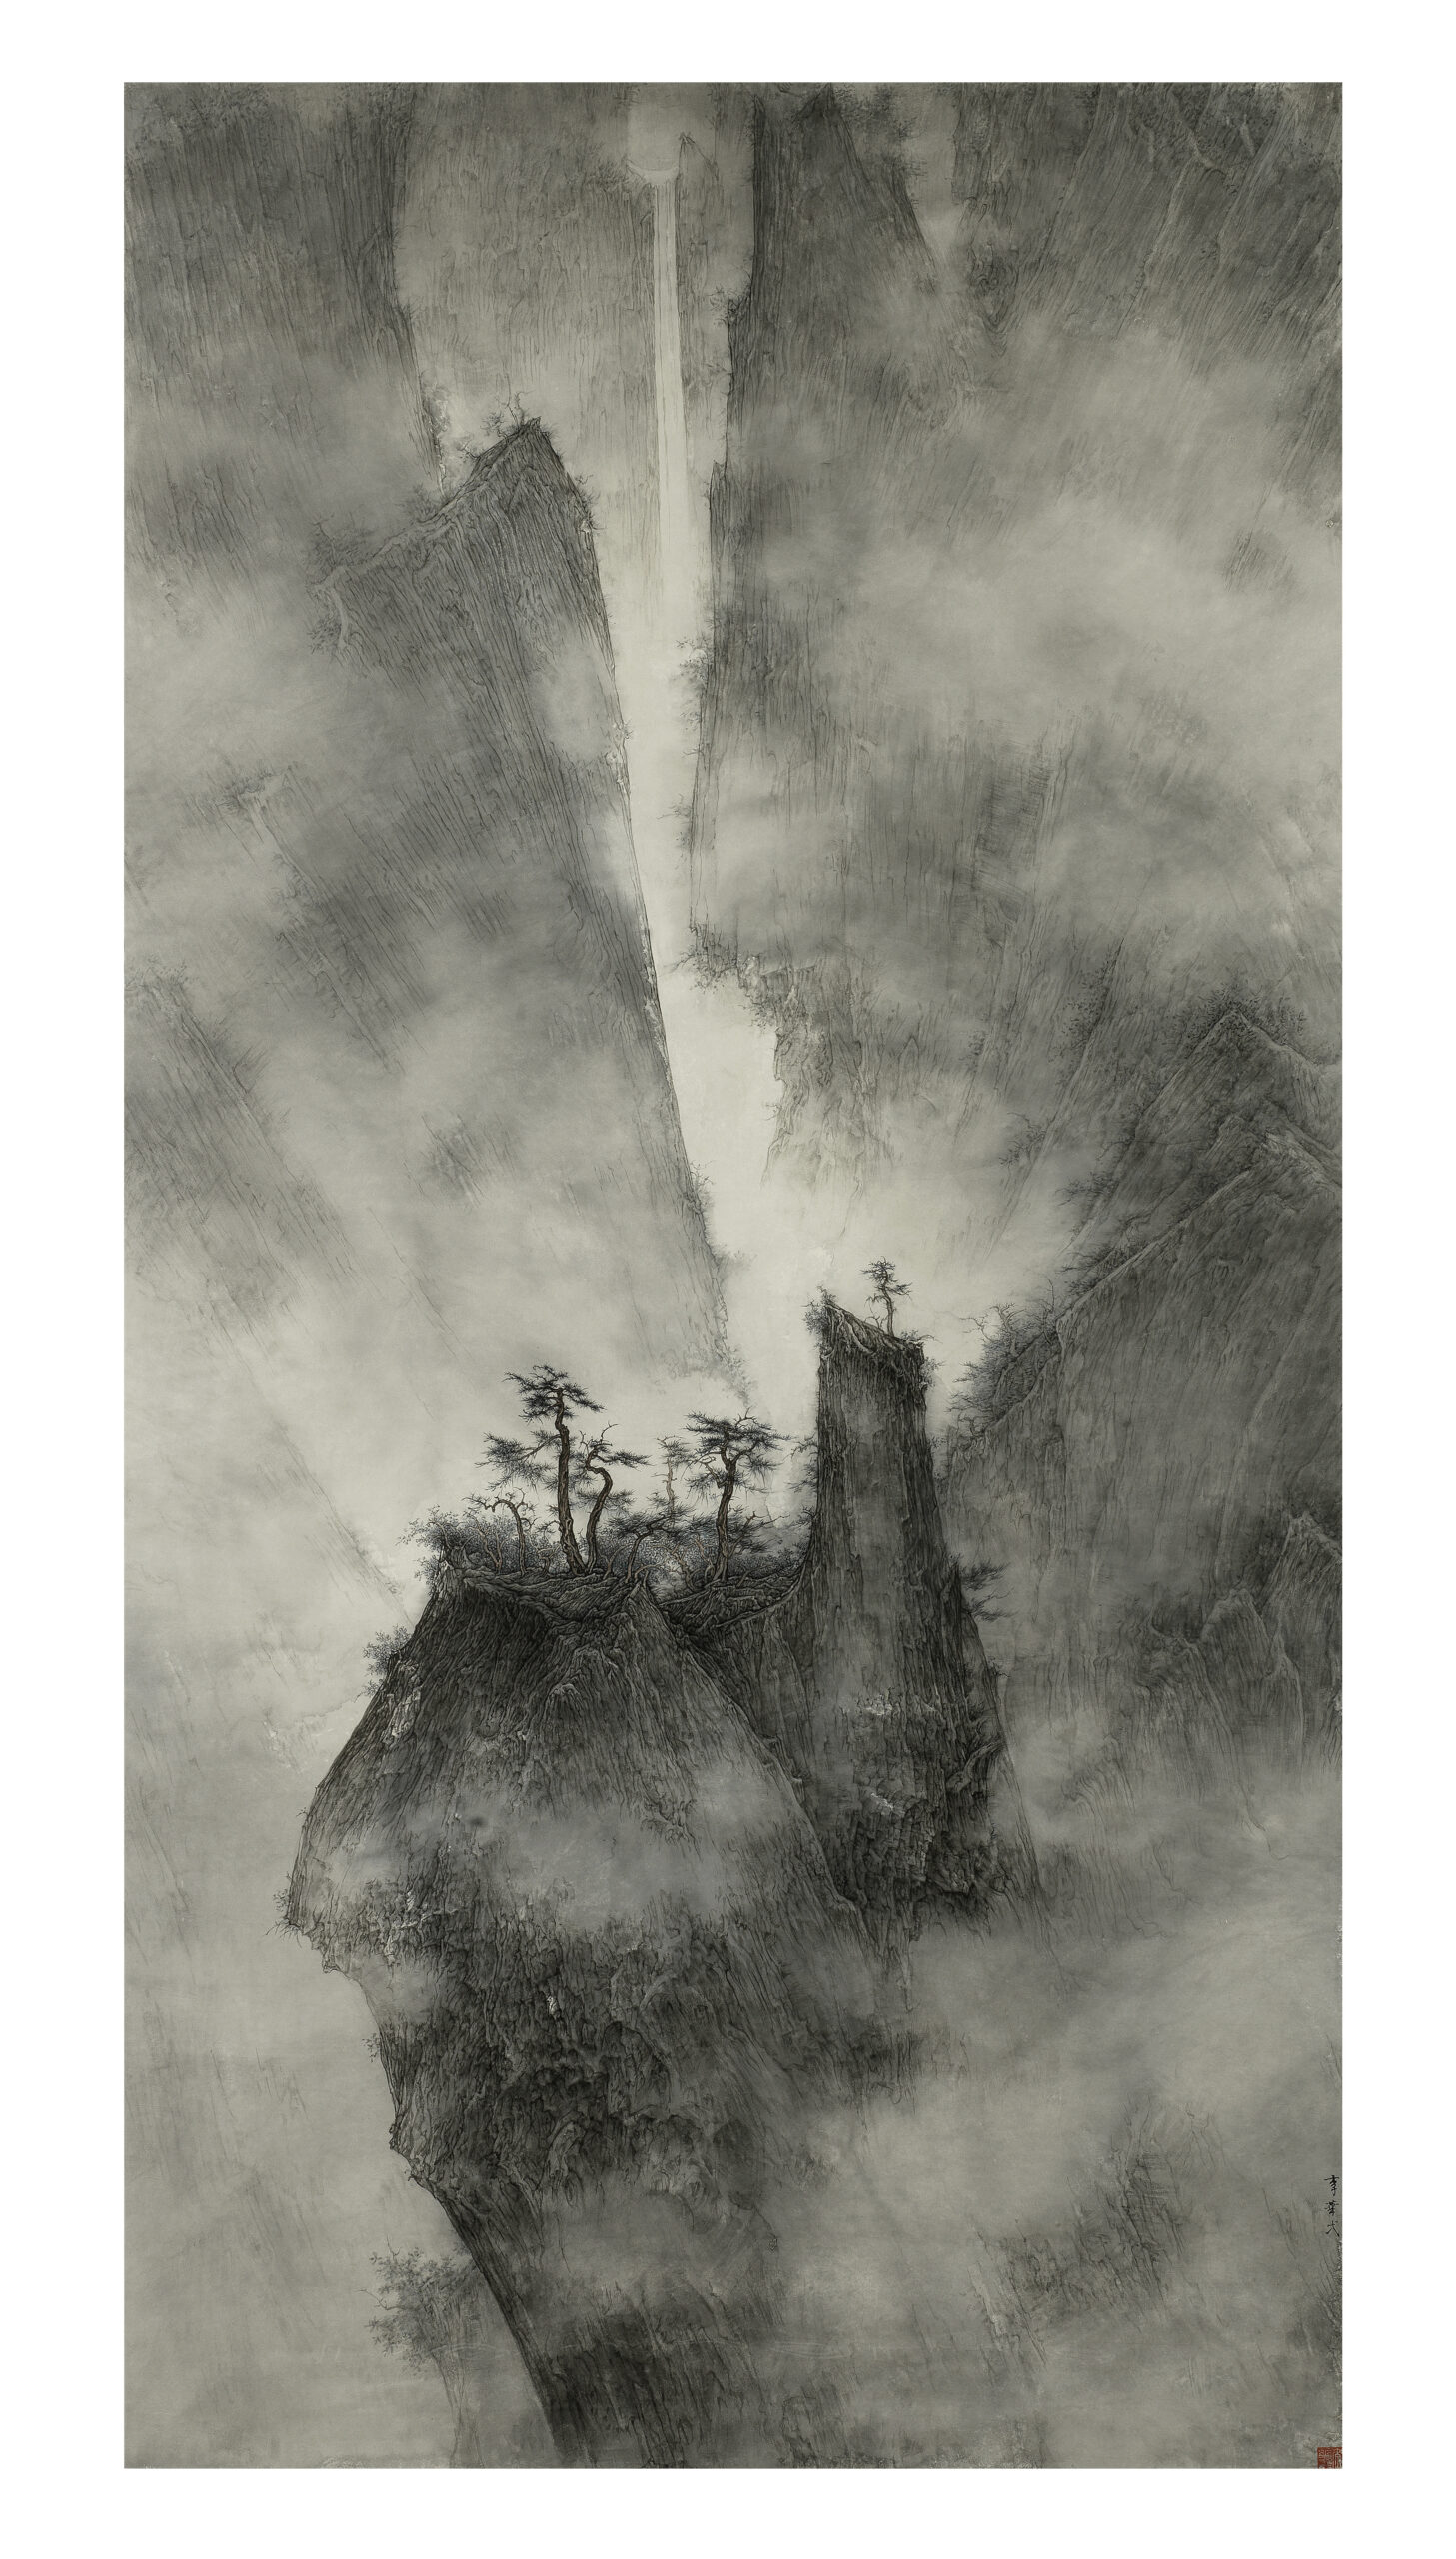 LI HUAYI (b.1948) Landscape, 2010-2011